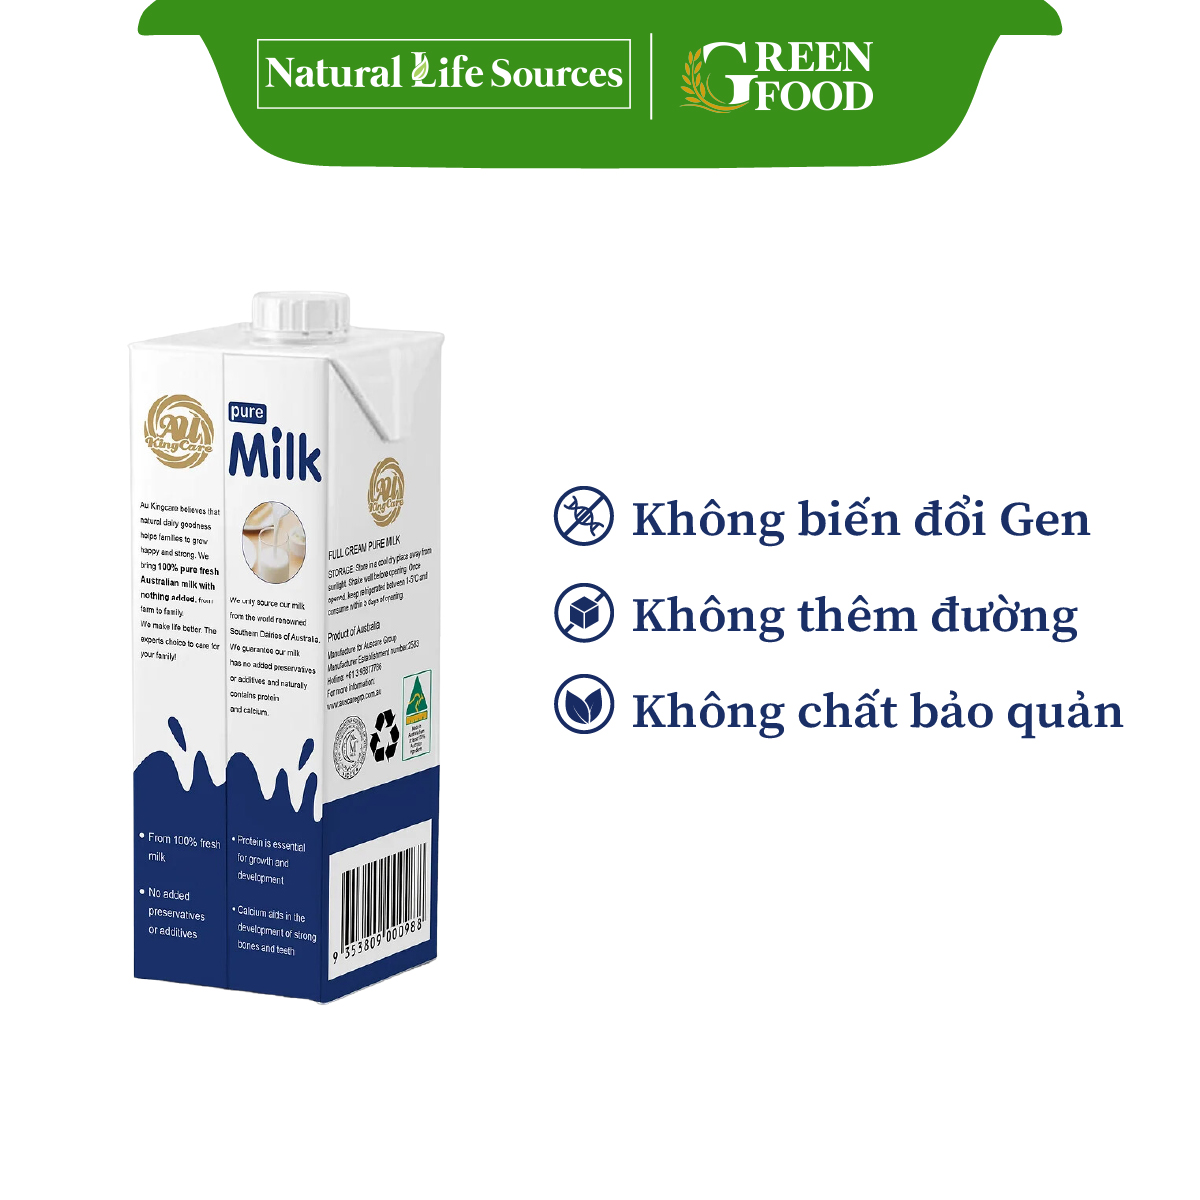 Sữa tươi tiệt trùng AU KingCare nguyên kem không đường | Hộp 1L - Nhập khẩu trực tiếp từ Úc